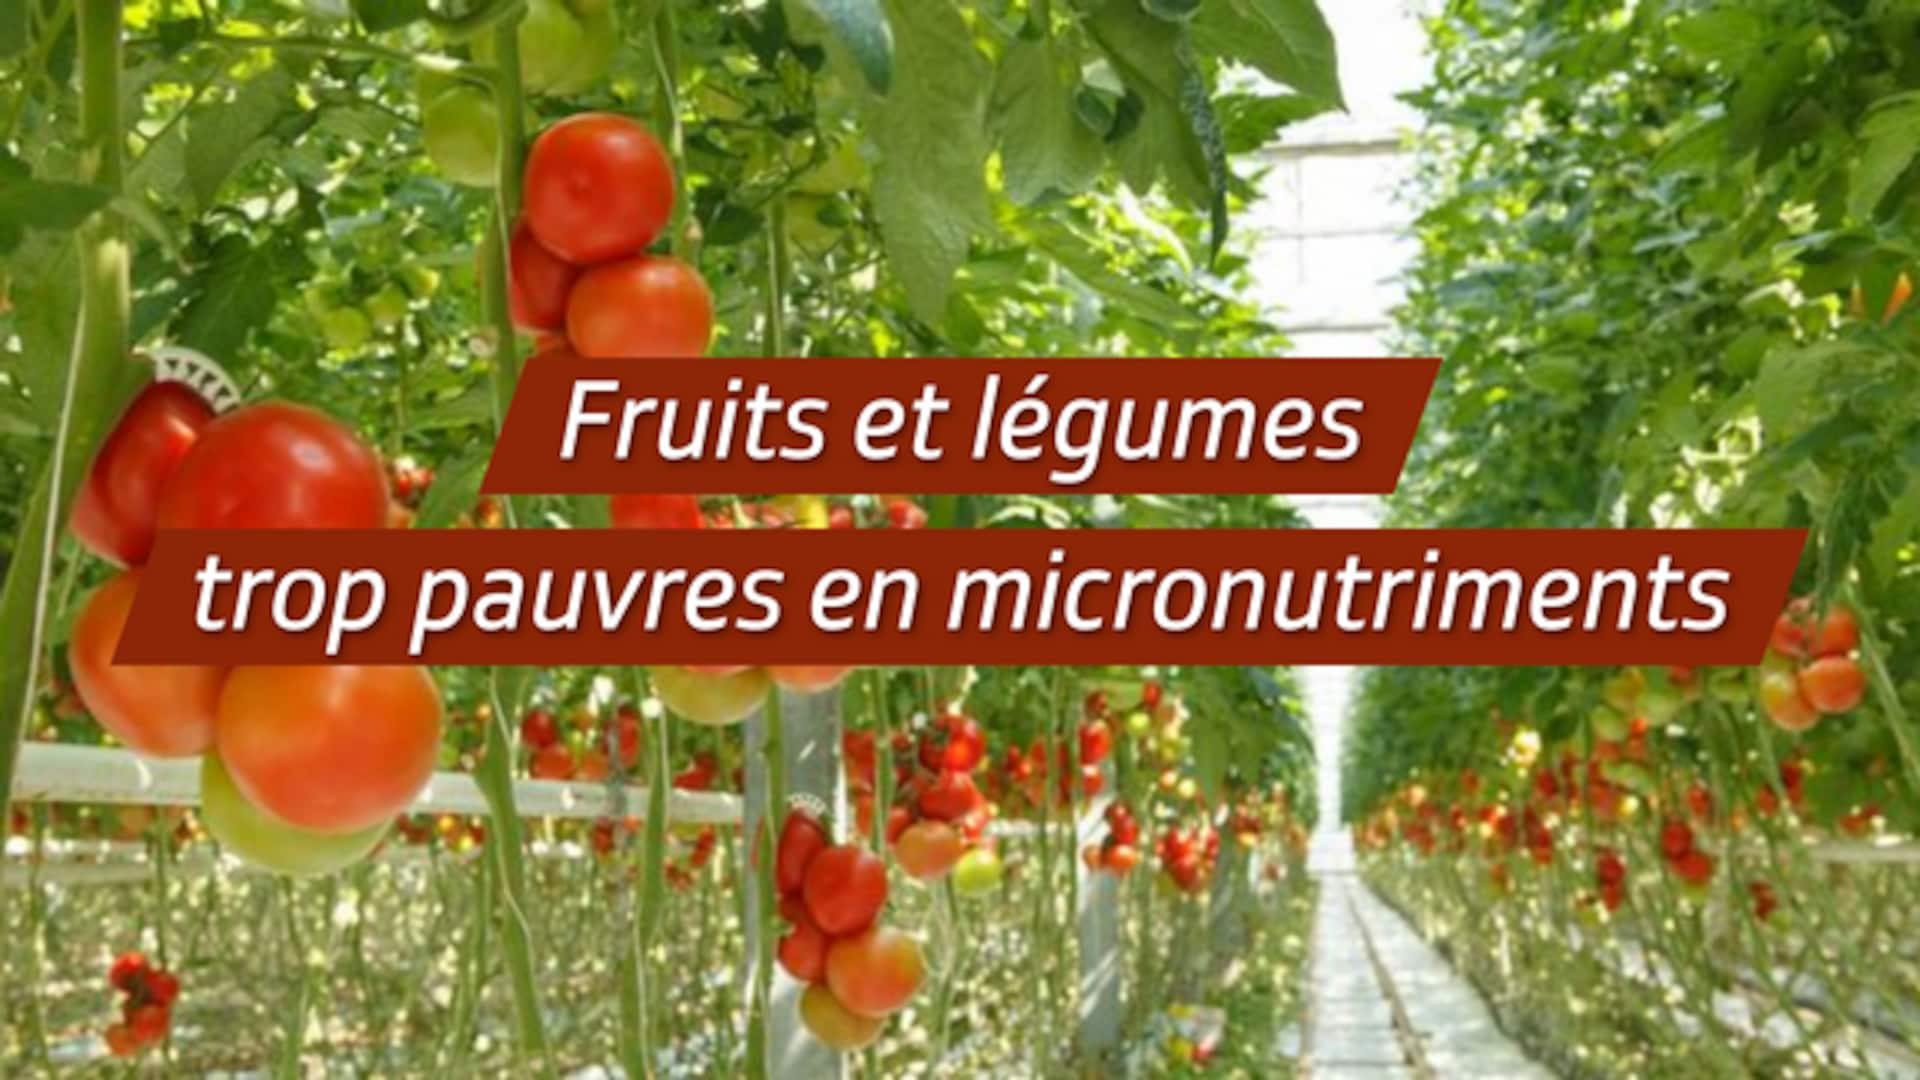 Fruits et légumes trop pauvres en micronutriments